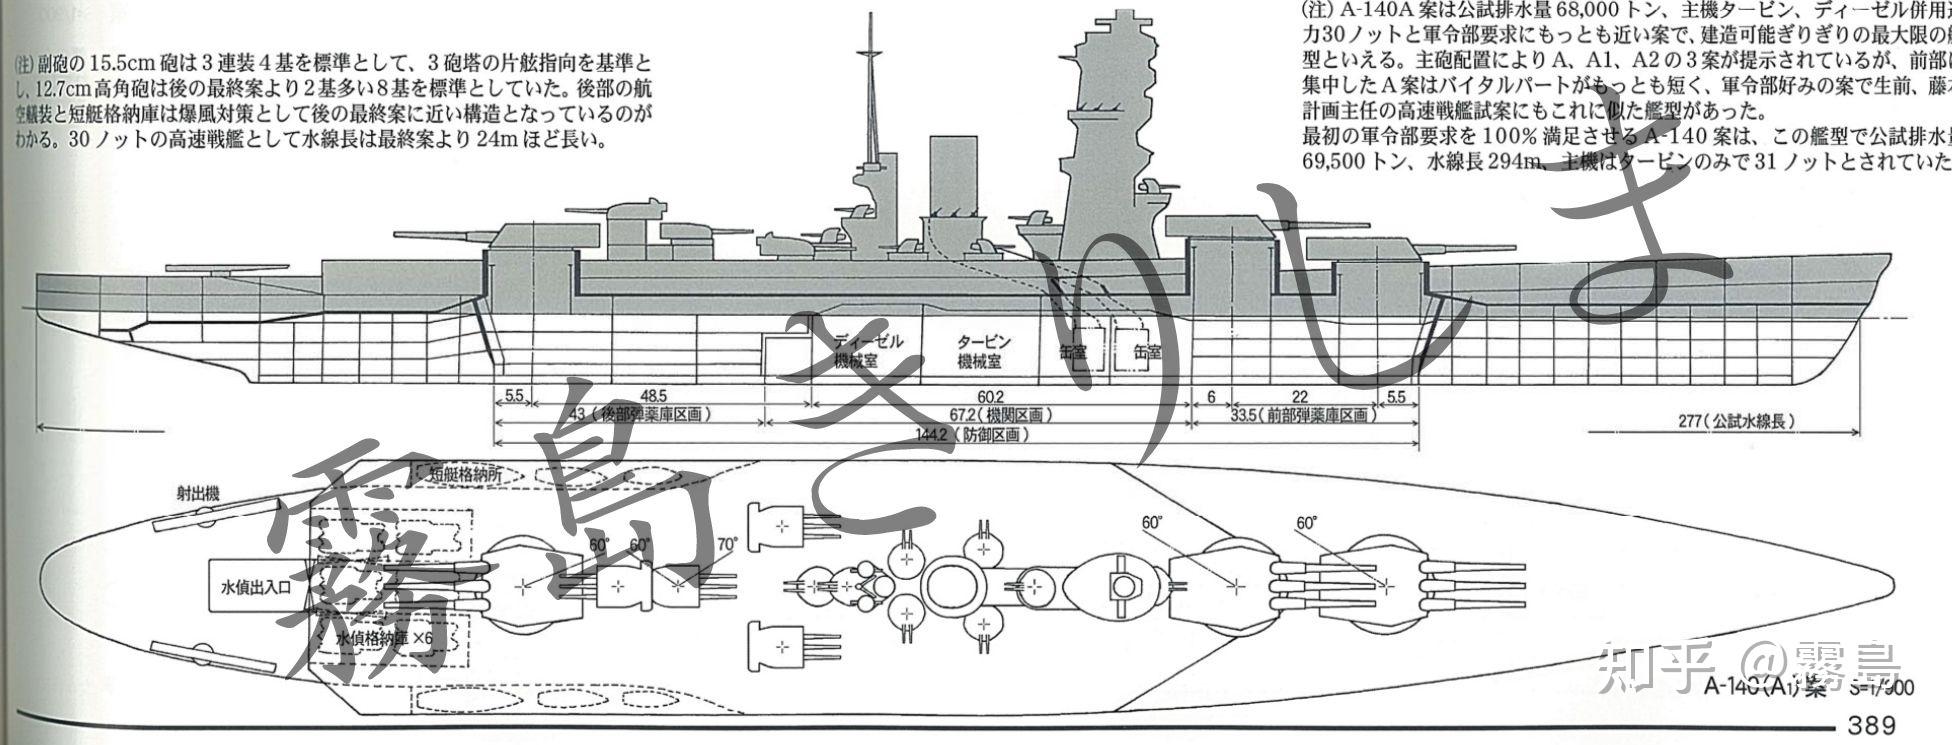 大和级战列舰三视图图片